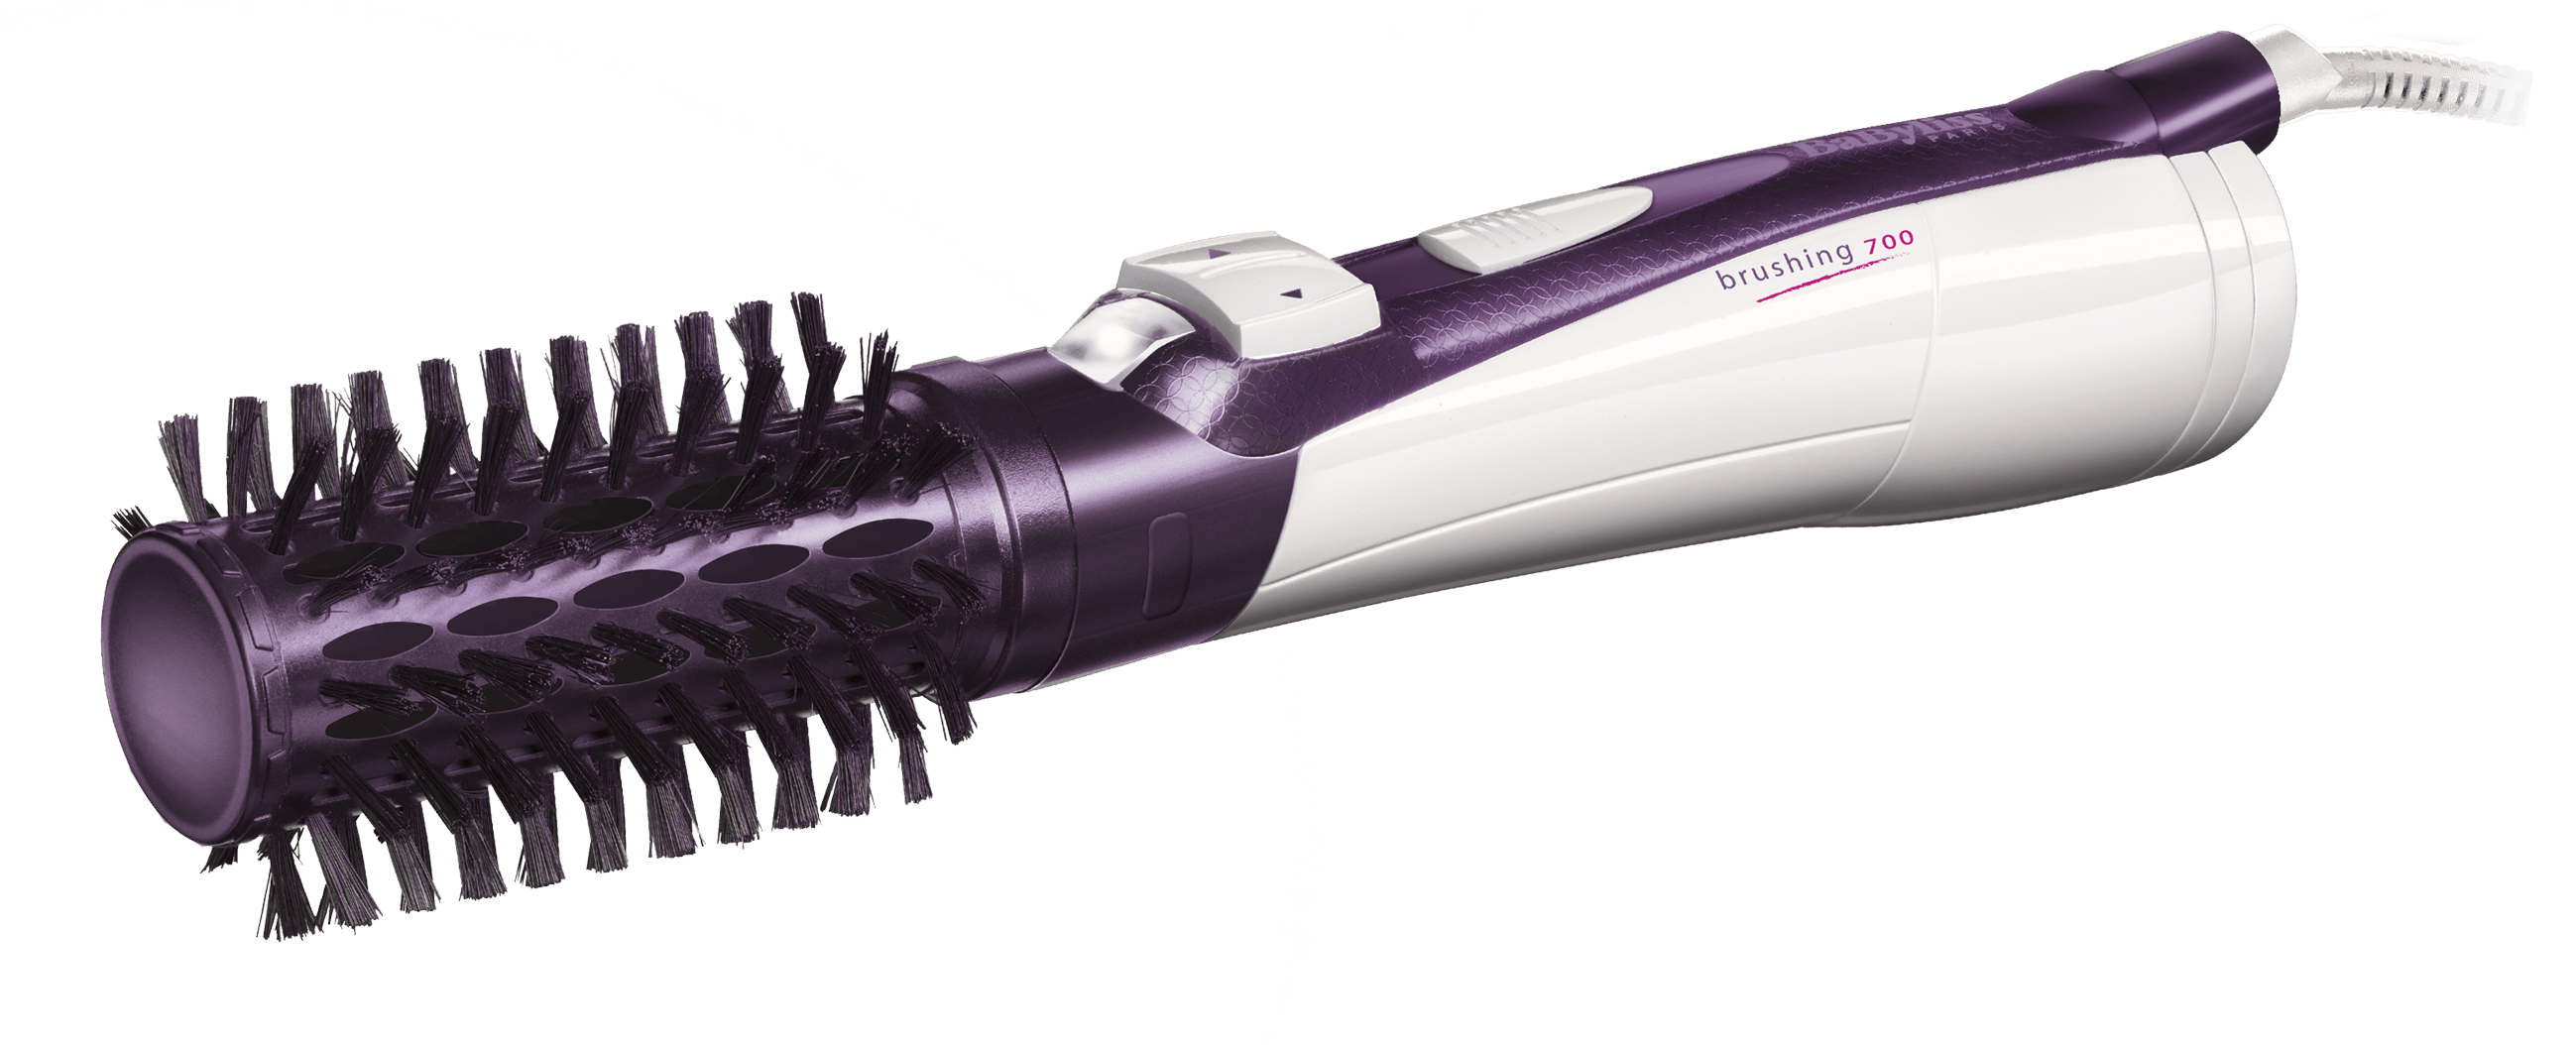 BaByliss Straightener Wet Dry LED Touch & BaByliss Hair Styler